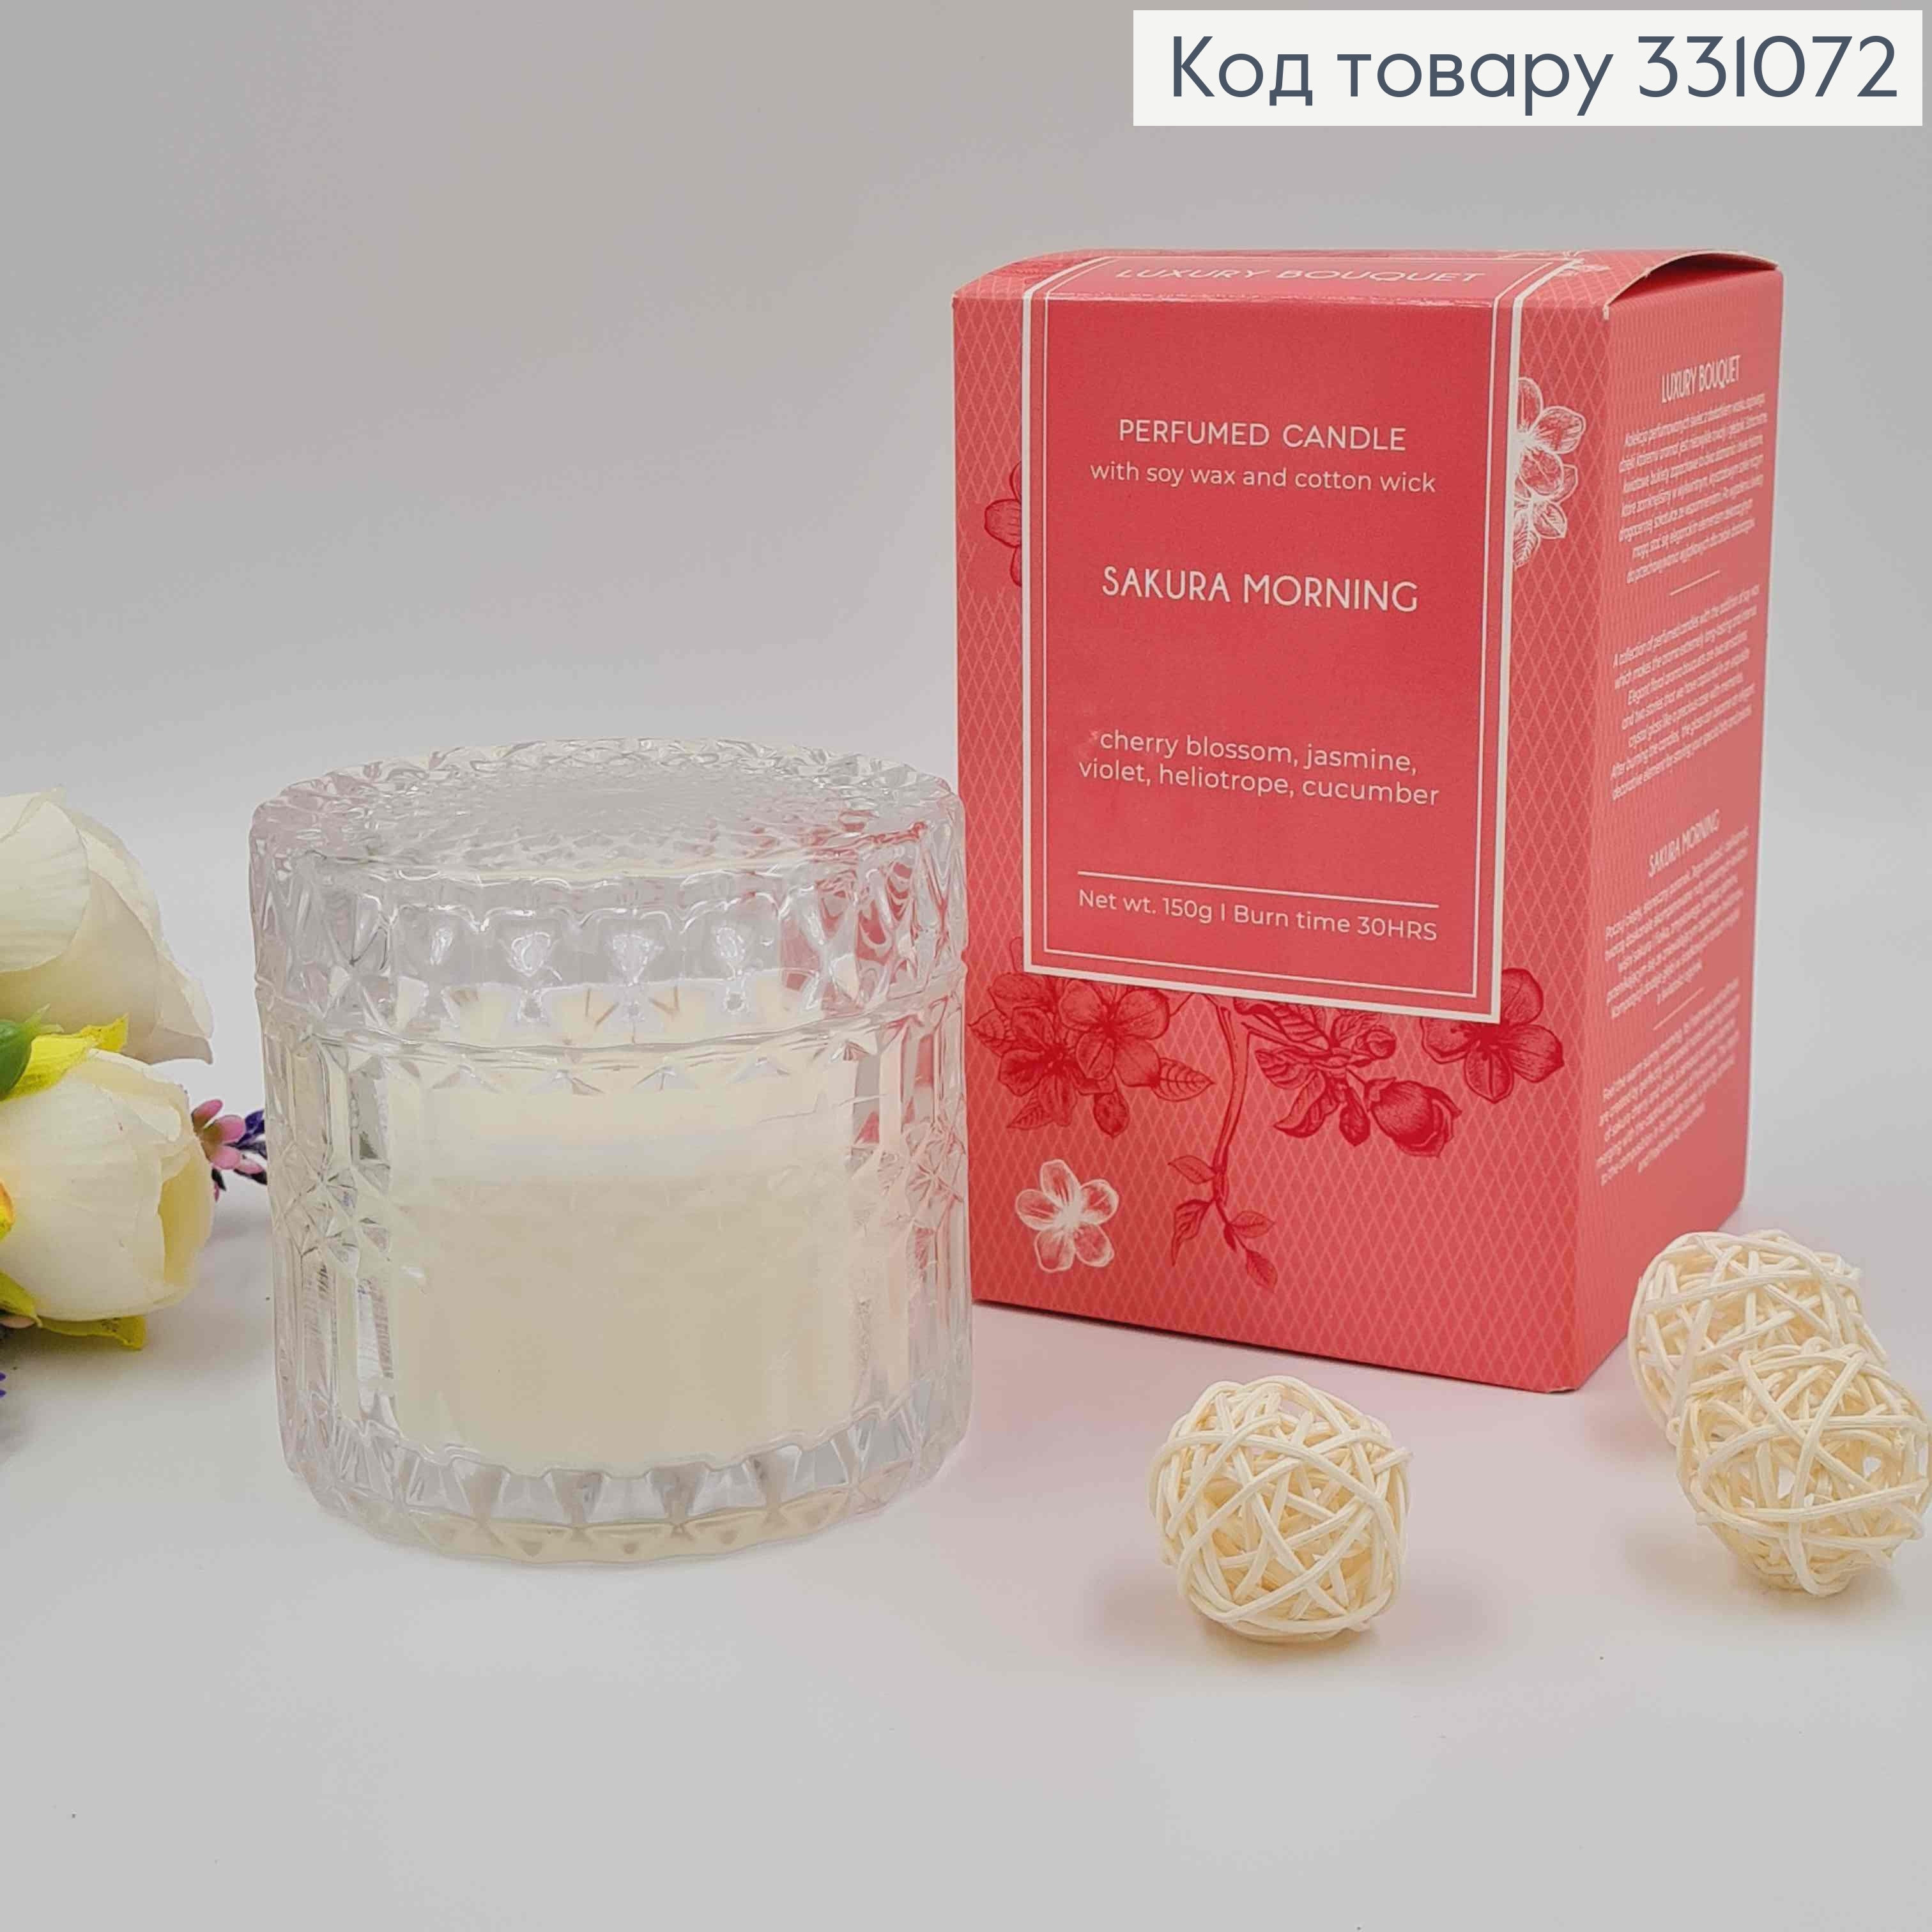 Парфюмерная свеча с крышкой, СОЕВА, SACURA MORNING (cherry,jasmine,violet,heliotrope,cucumber) 331072 фото 2